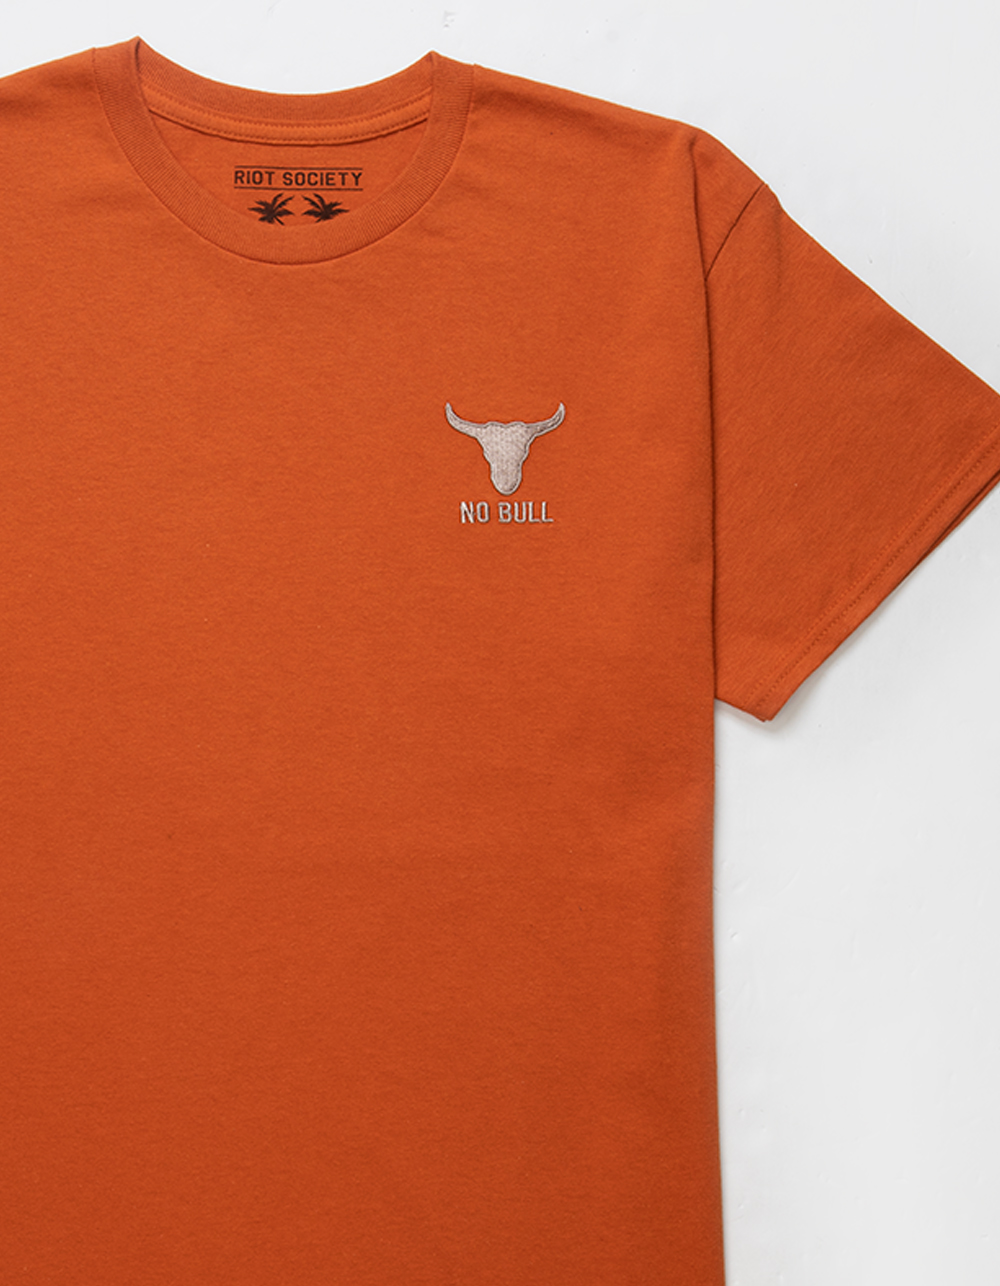 Teenage Mutant Ninja Turtles Adult Short Sleeve T-Shirt Burnt Orange / XL